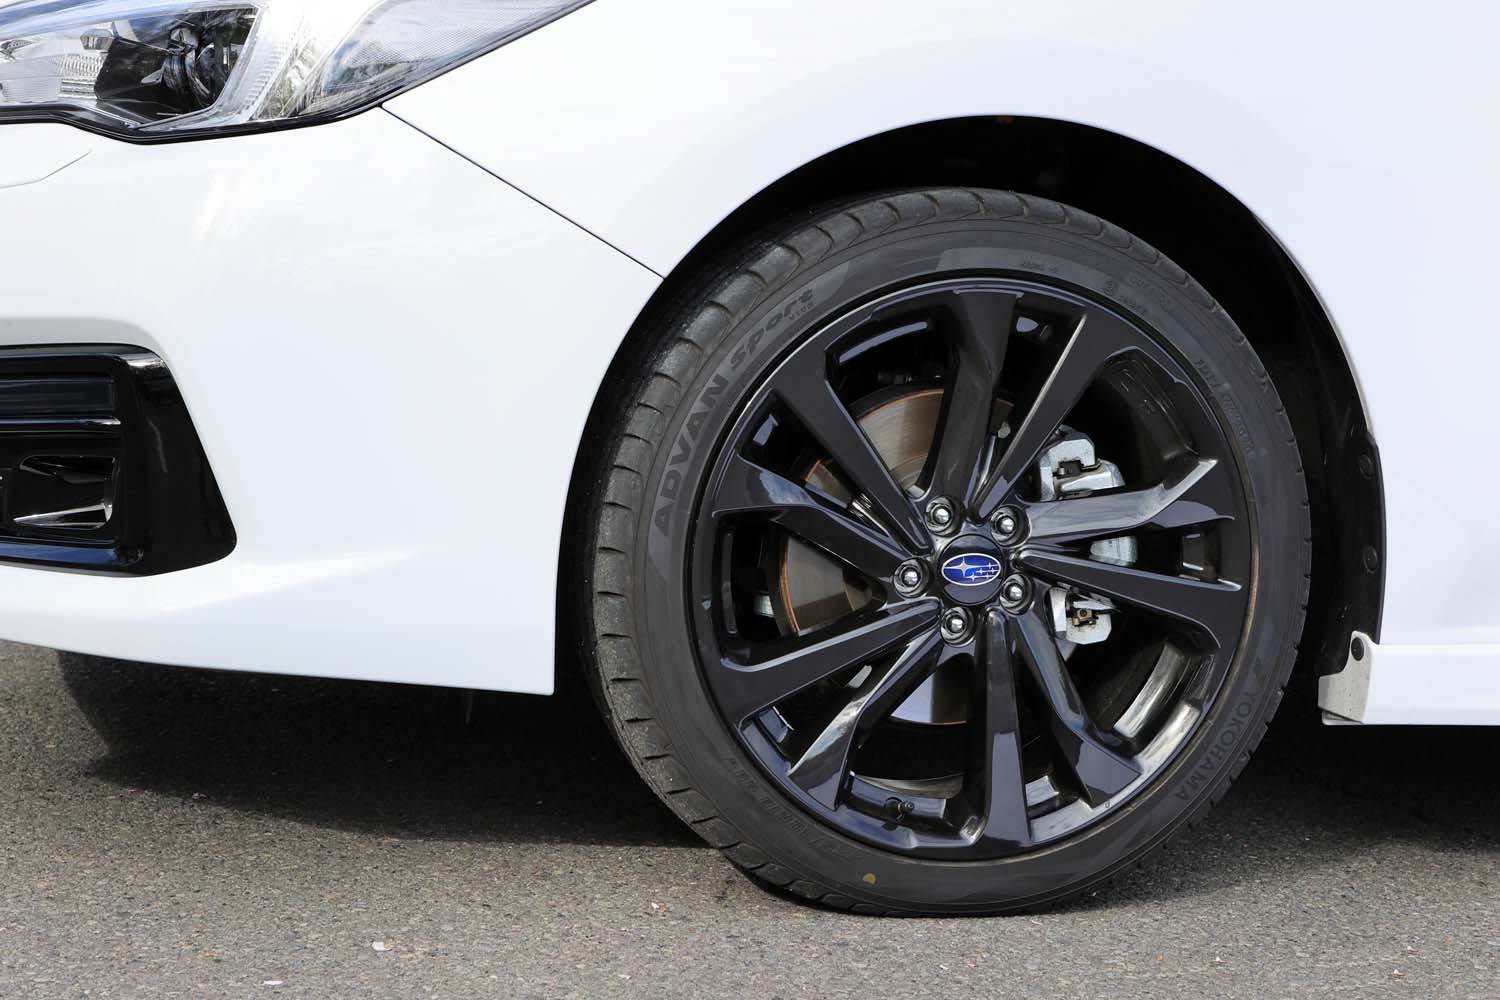 タイヤ＆ホイールはラインナップで最も大きな18インチ。ホイールにはダークメタリック塗装が施される。